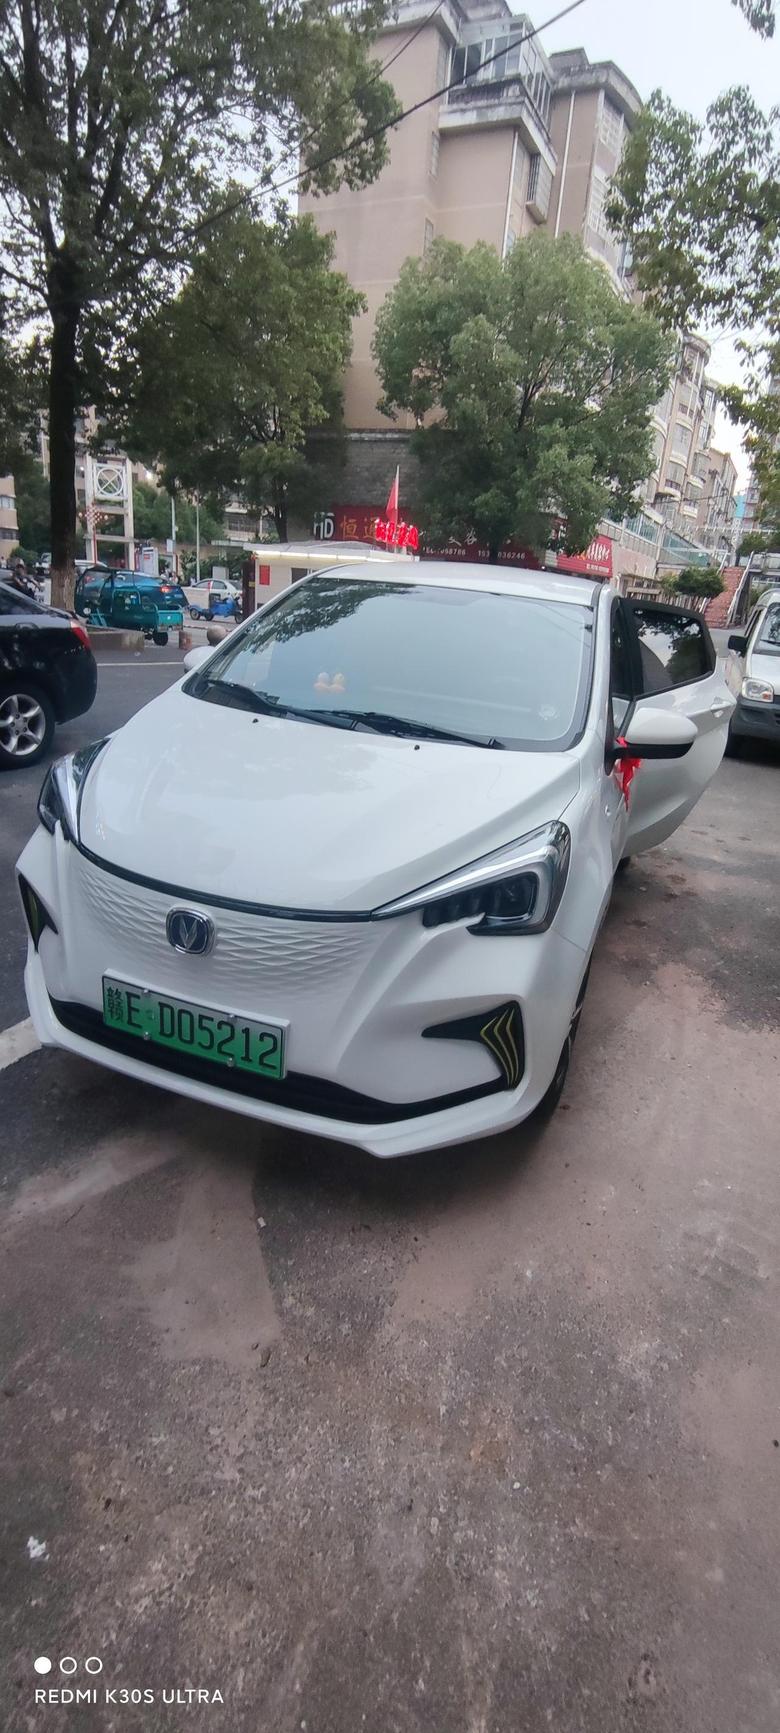 奔奔e star 问了半个中国的4s店都是要等几个月，无奈汽贸加价一个月提车，提速秒杀二十万没所有燃油车